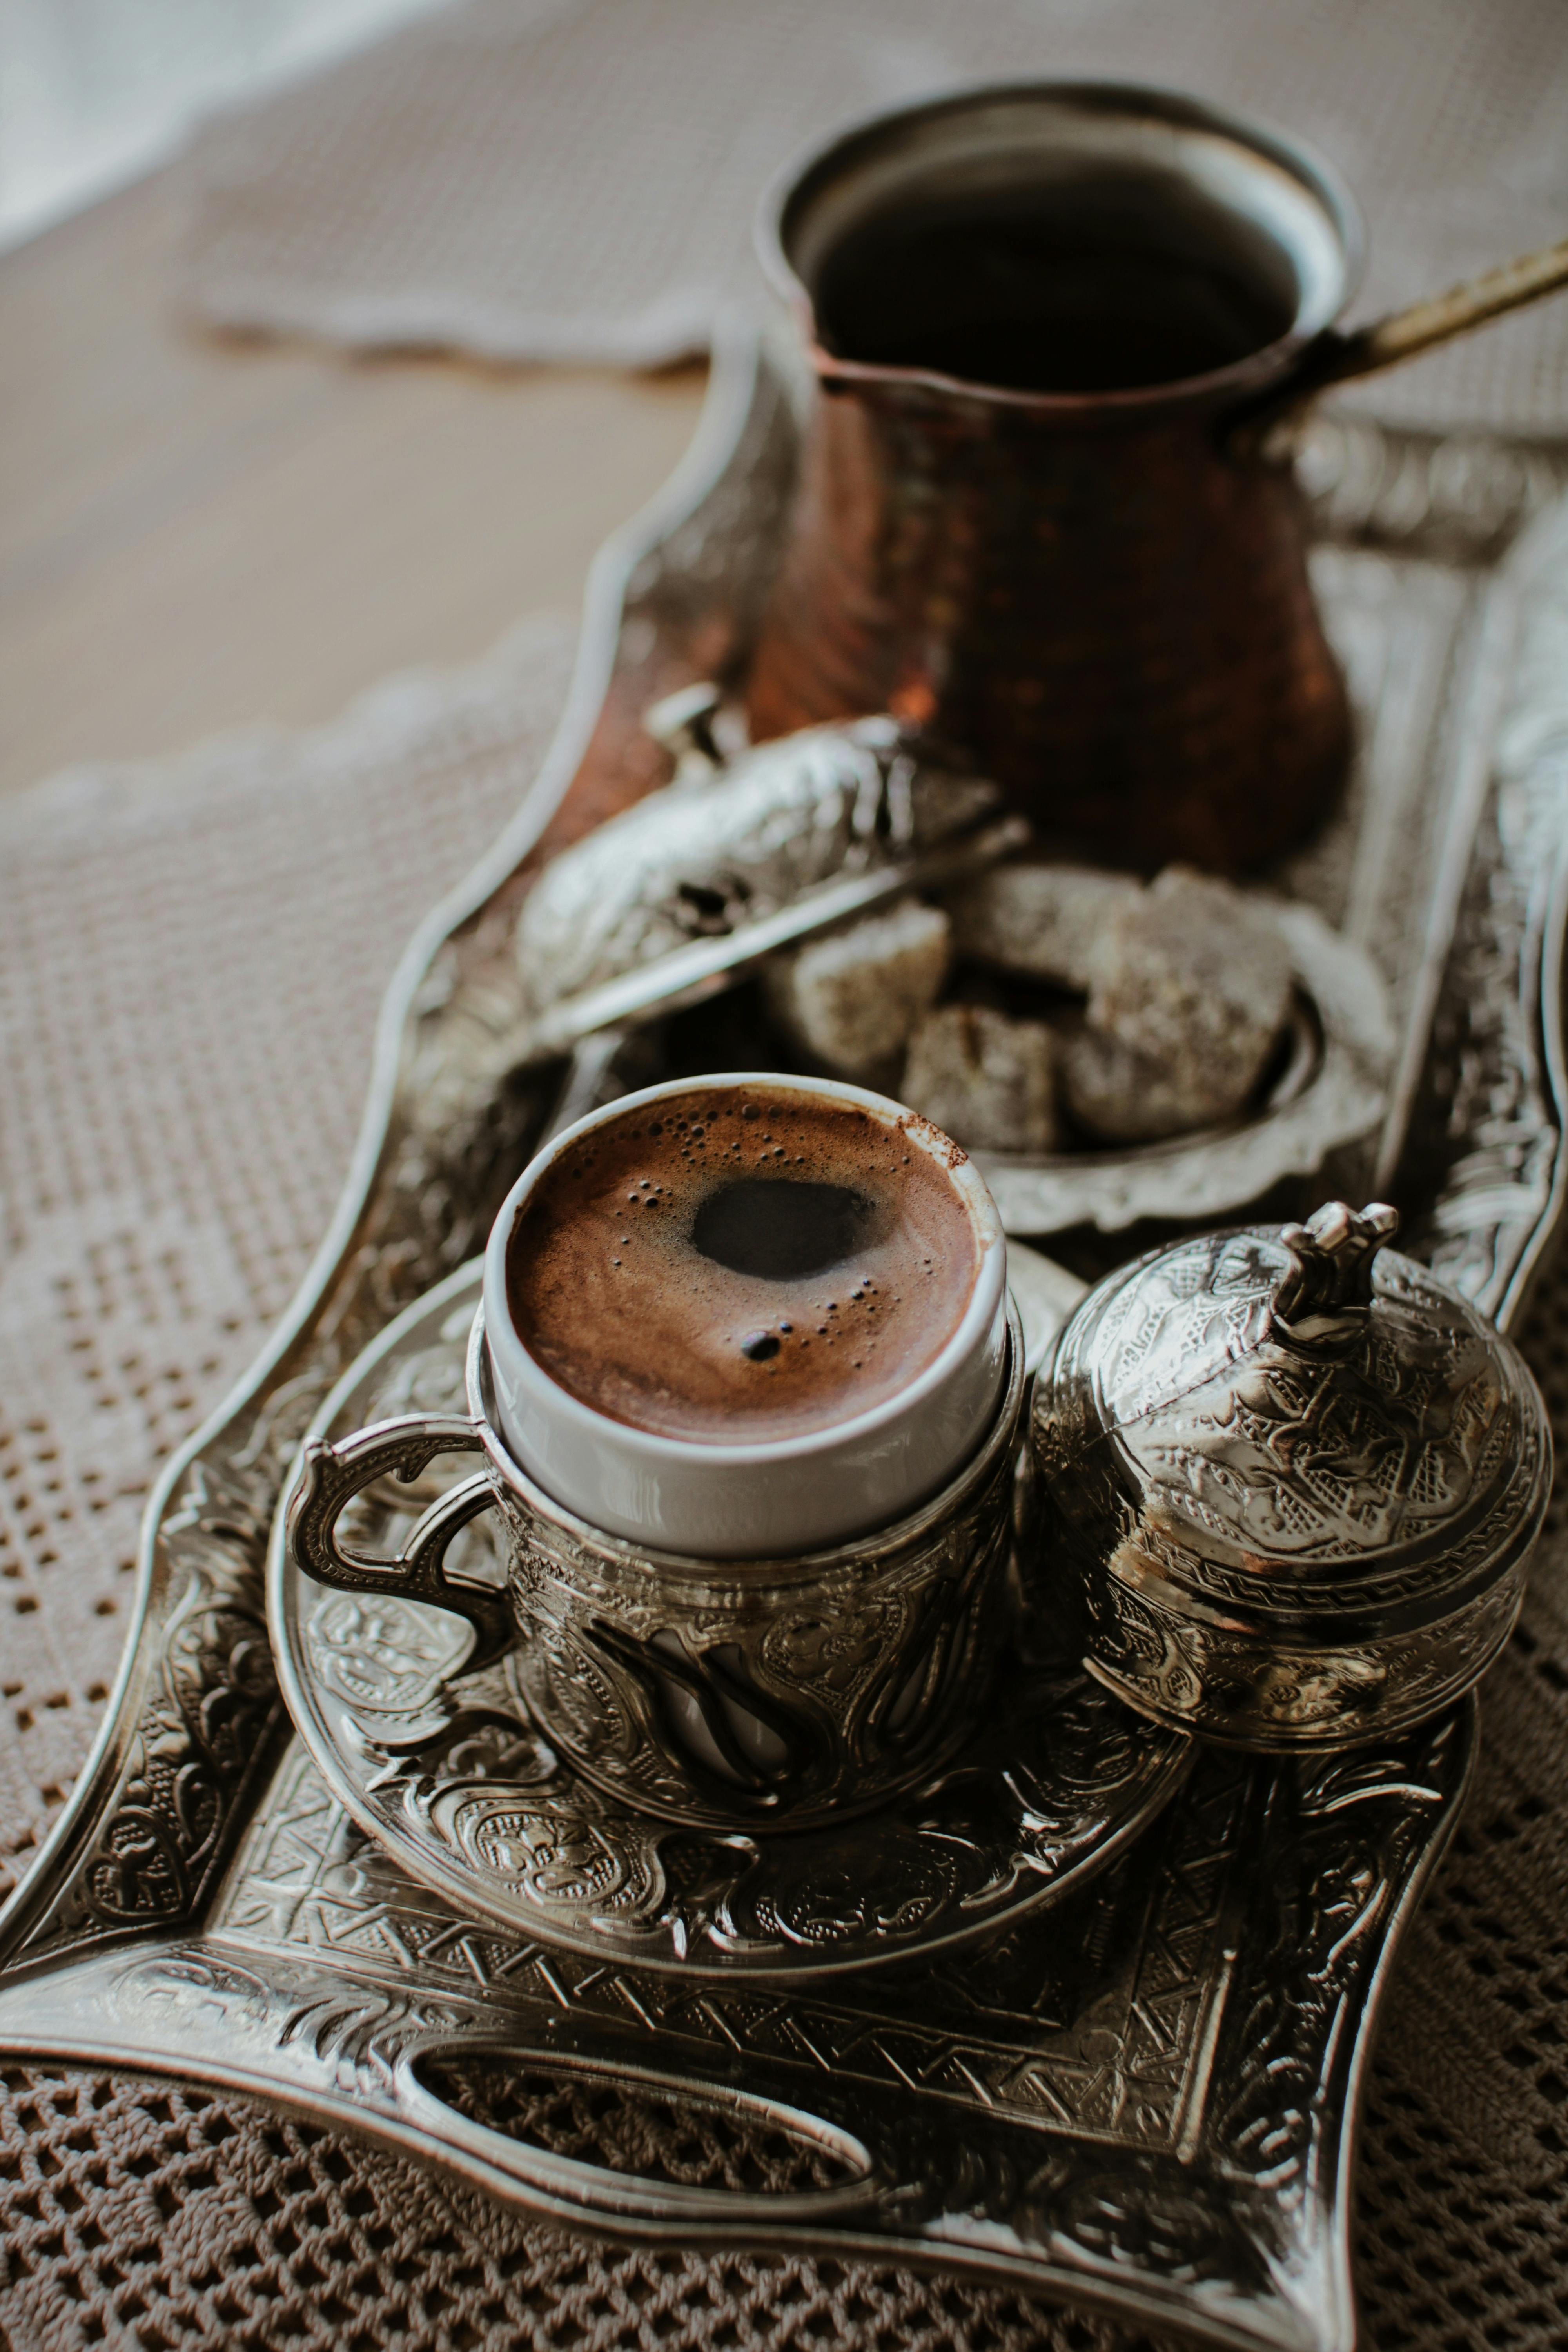 Ceramic Cezve Turka Turkish Coffee On Stock Photo 1046371684